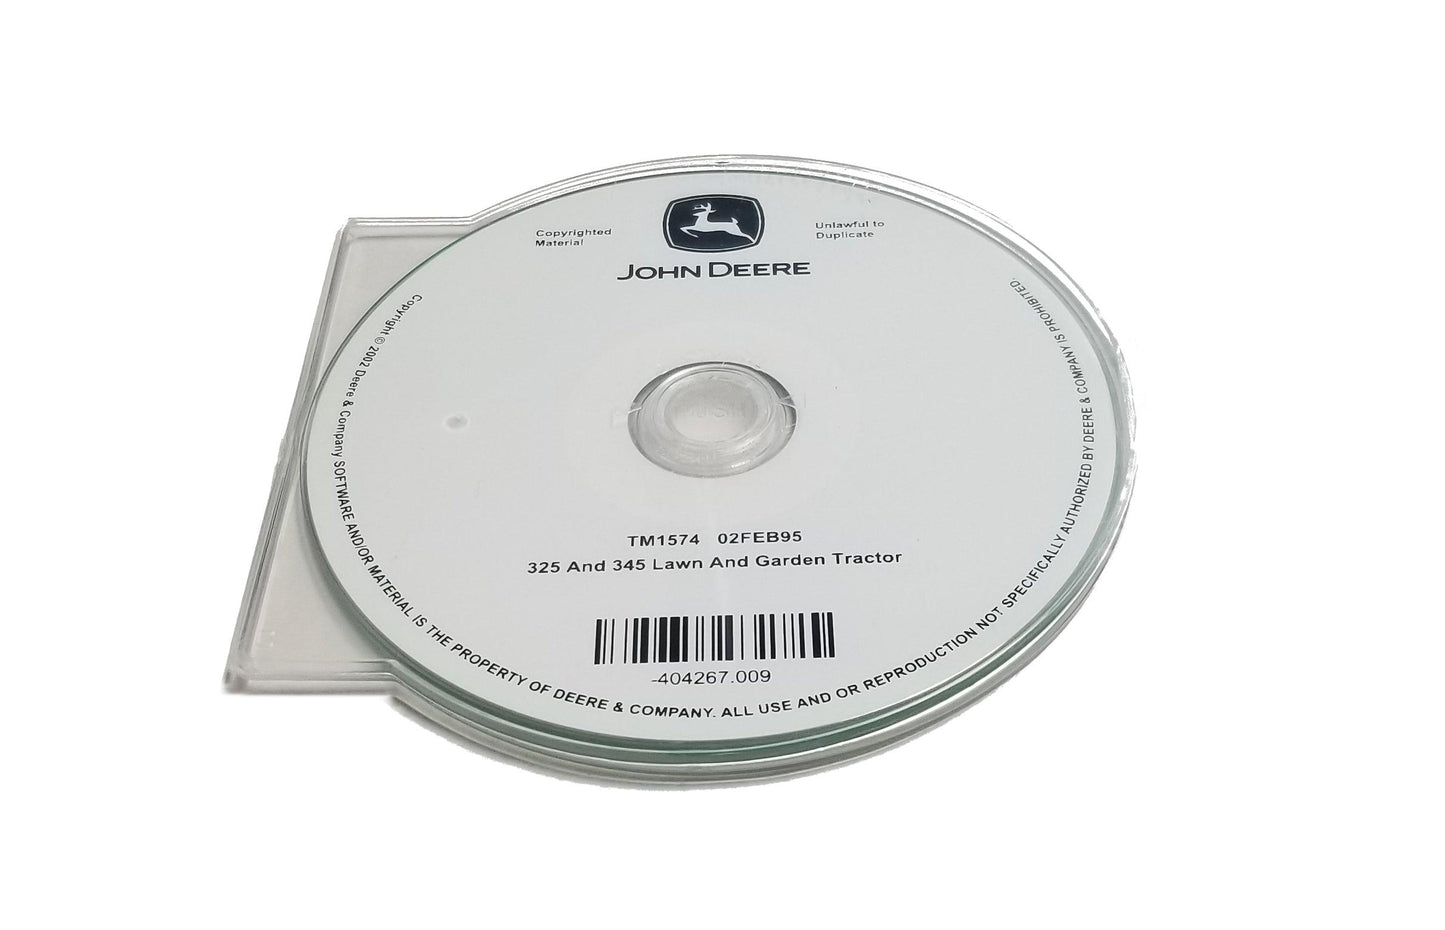 John Deere 325/345 Lawn & Garden Tractors Technical CD Manual - TM1574CD